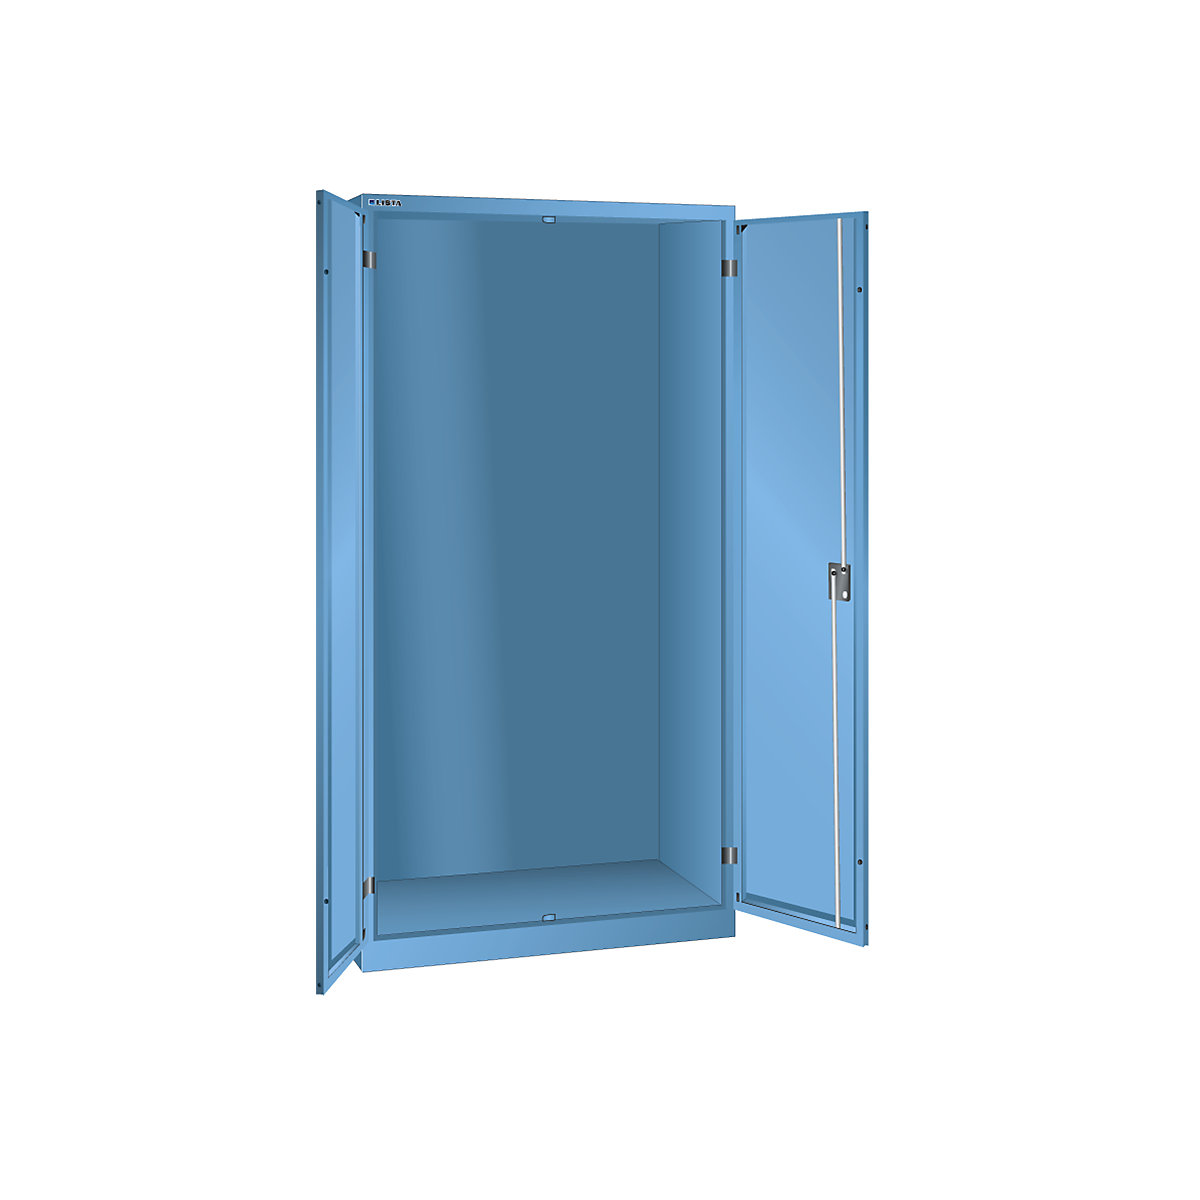 Skříň s otočnými dveřmi, v x š x h 1950 x 1000 x 580 mm - LISTA